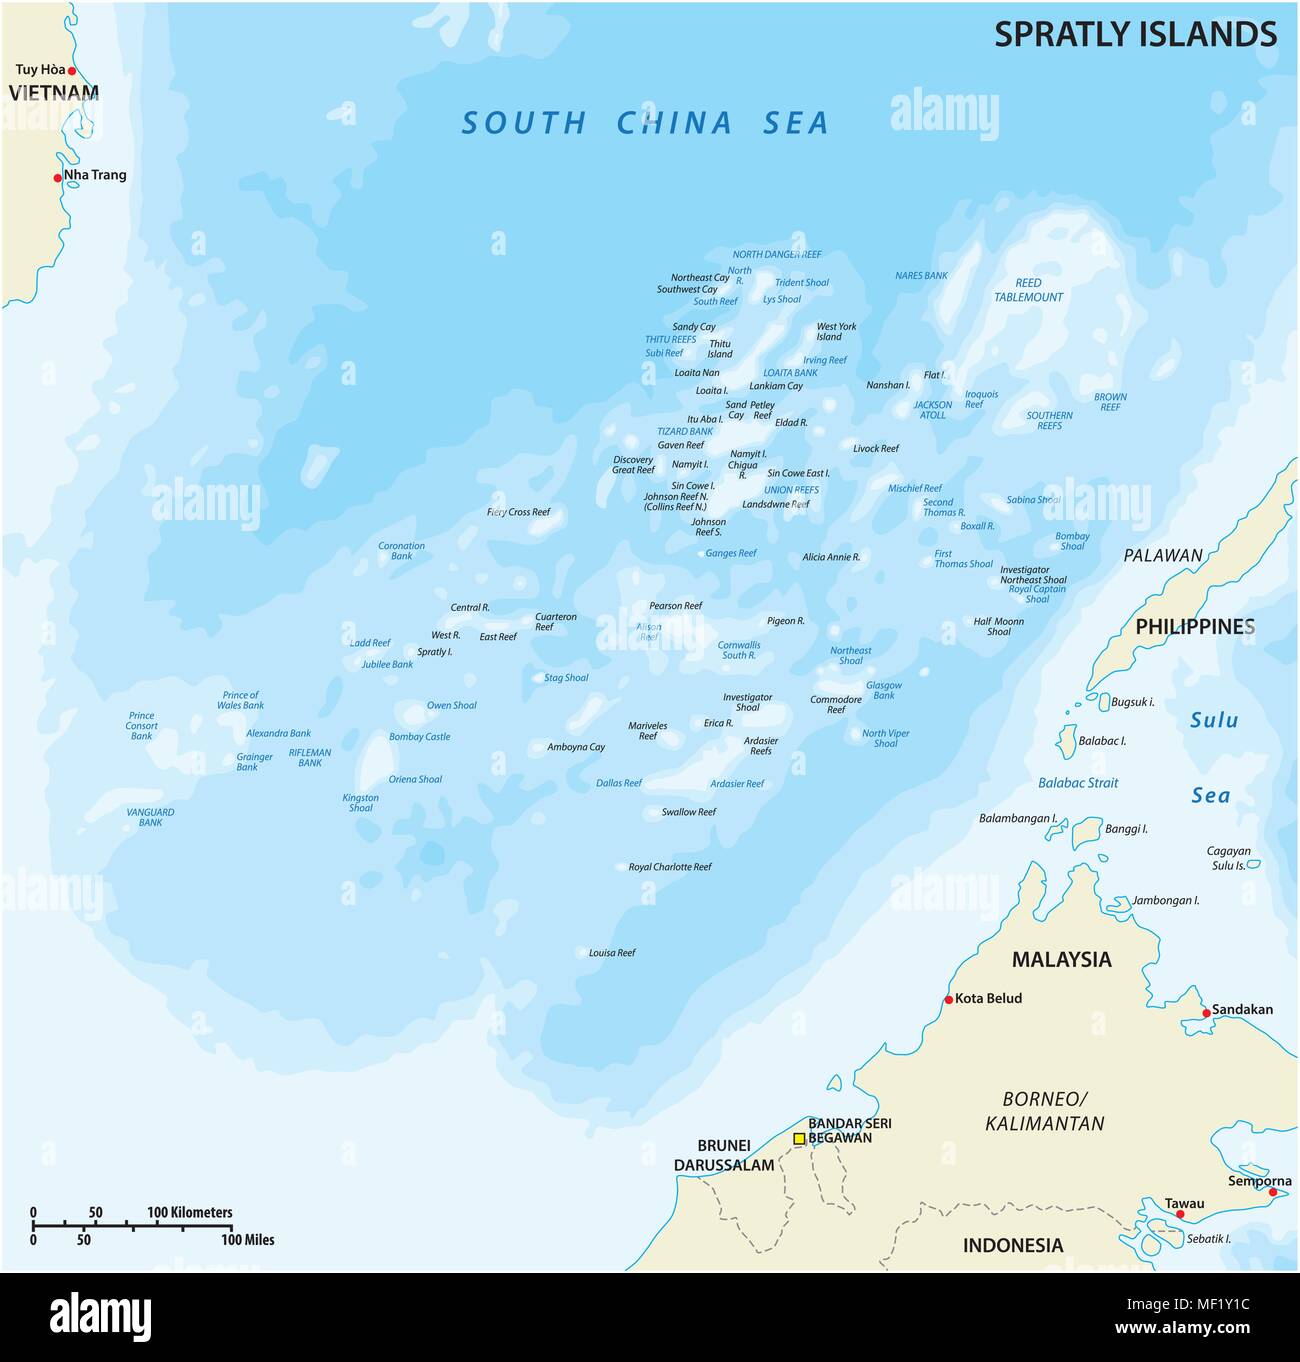 Karte von Malaysia, den Philippinen, Taiwan, Vietnam, Volksrepublik China und Brunei umstrittene Spratly Inseln im Südchinesischen Meer Stock Vektor